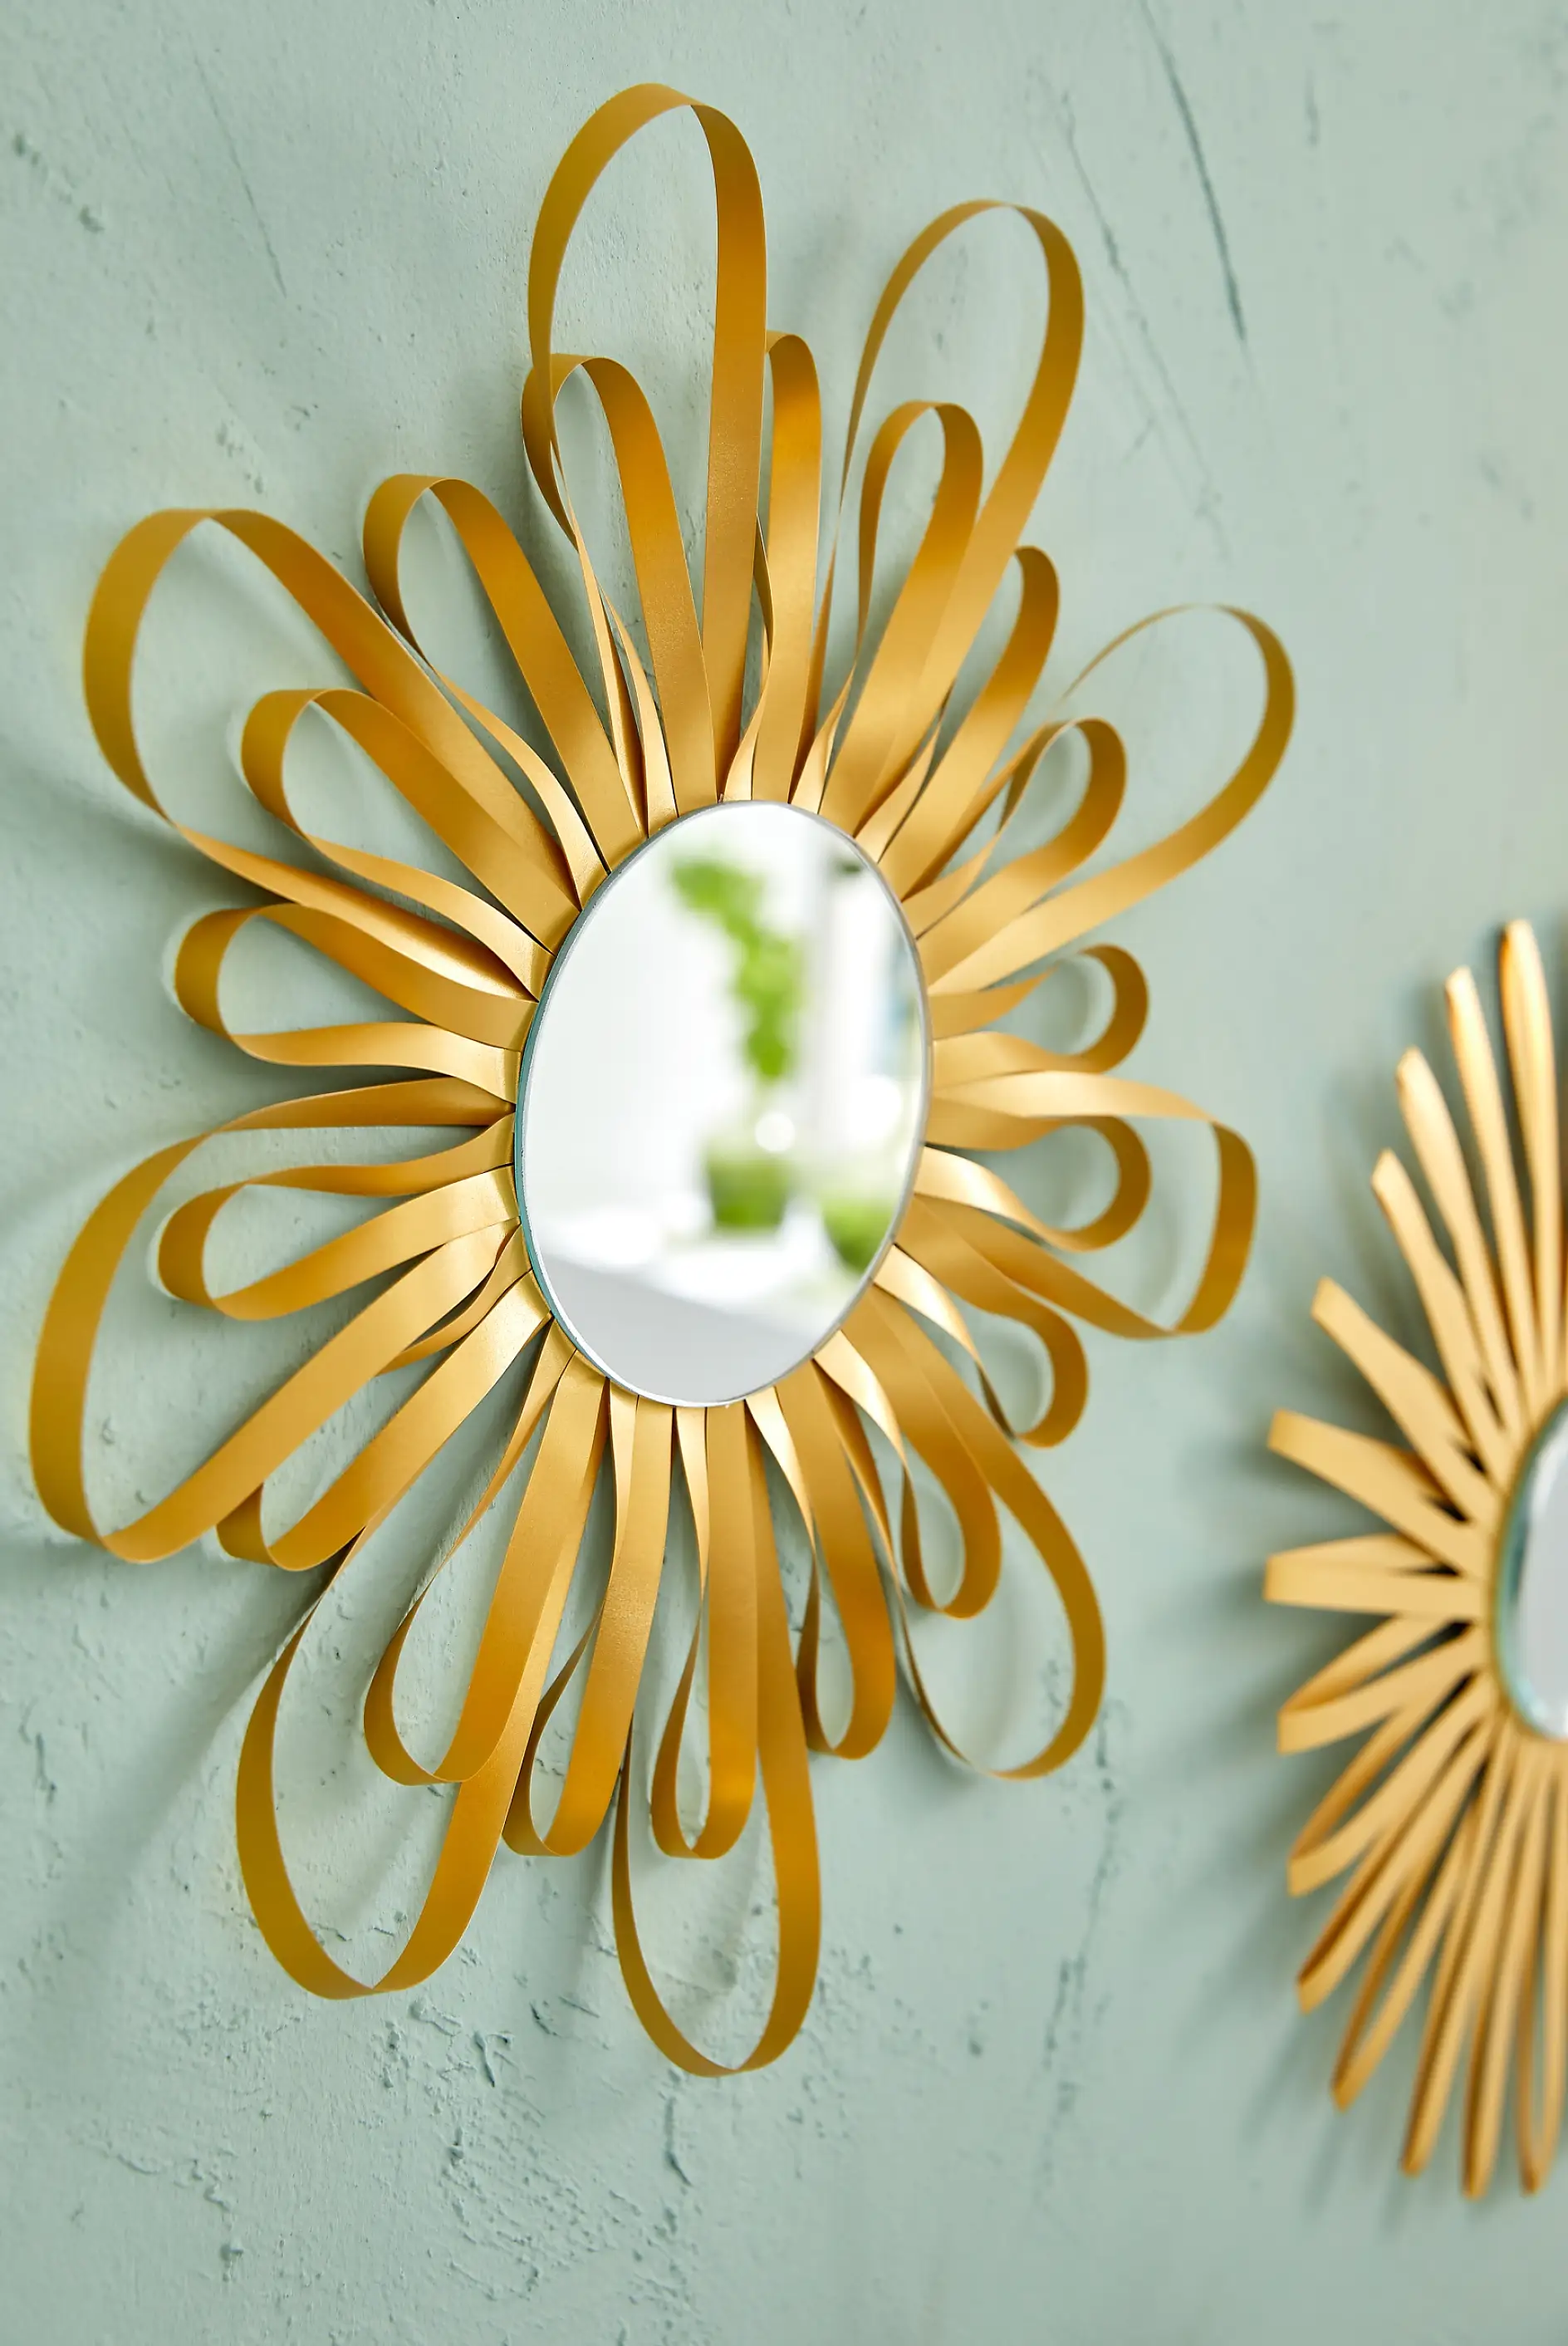 Die Aussichten sind heiter bis sonnig, wenn diese Spiegel an der Wand hängen. Jeder wirkt für sich allein, aber zusammen sehen sie noch schöner aus! Dabei heißt es: „Erlaubt ist, was gefällt“, denn die Papierstreifen lassen sich in den unterschiedlichsten Mustern rund um den Spiegel arrangieren.